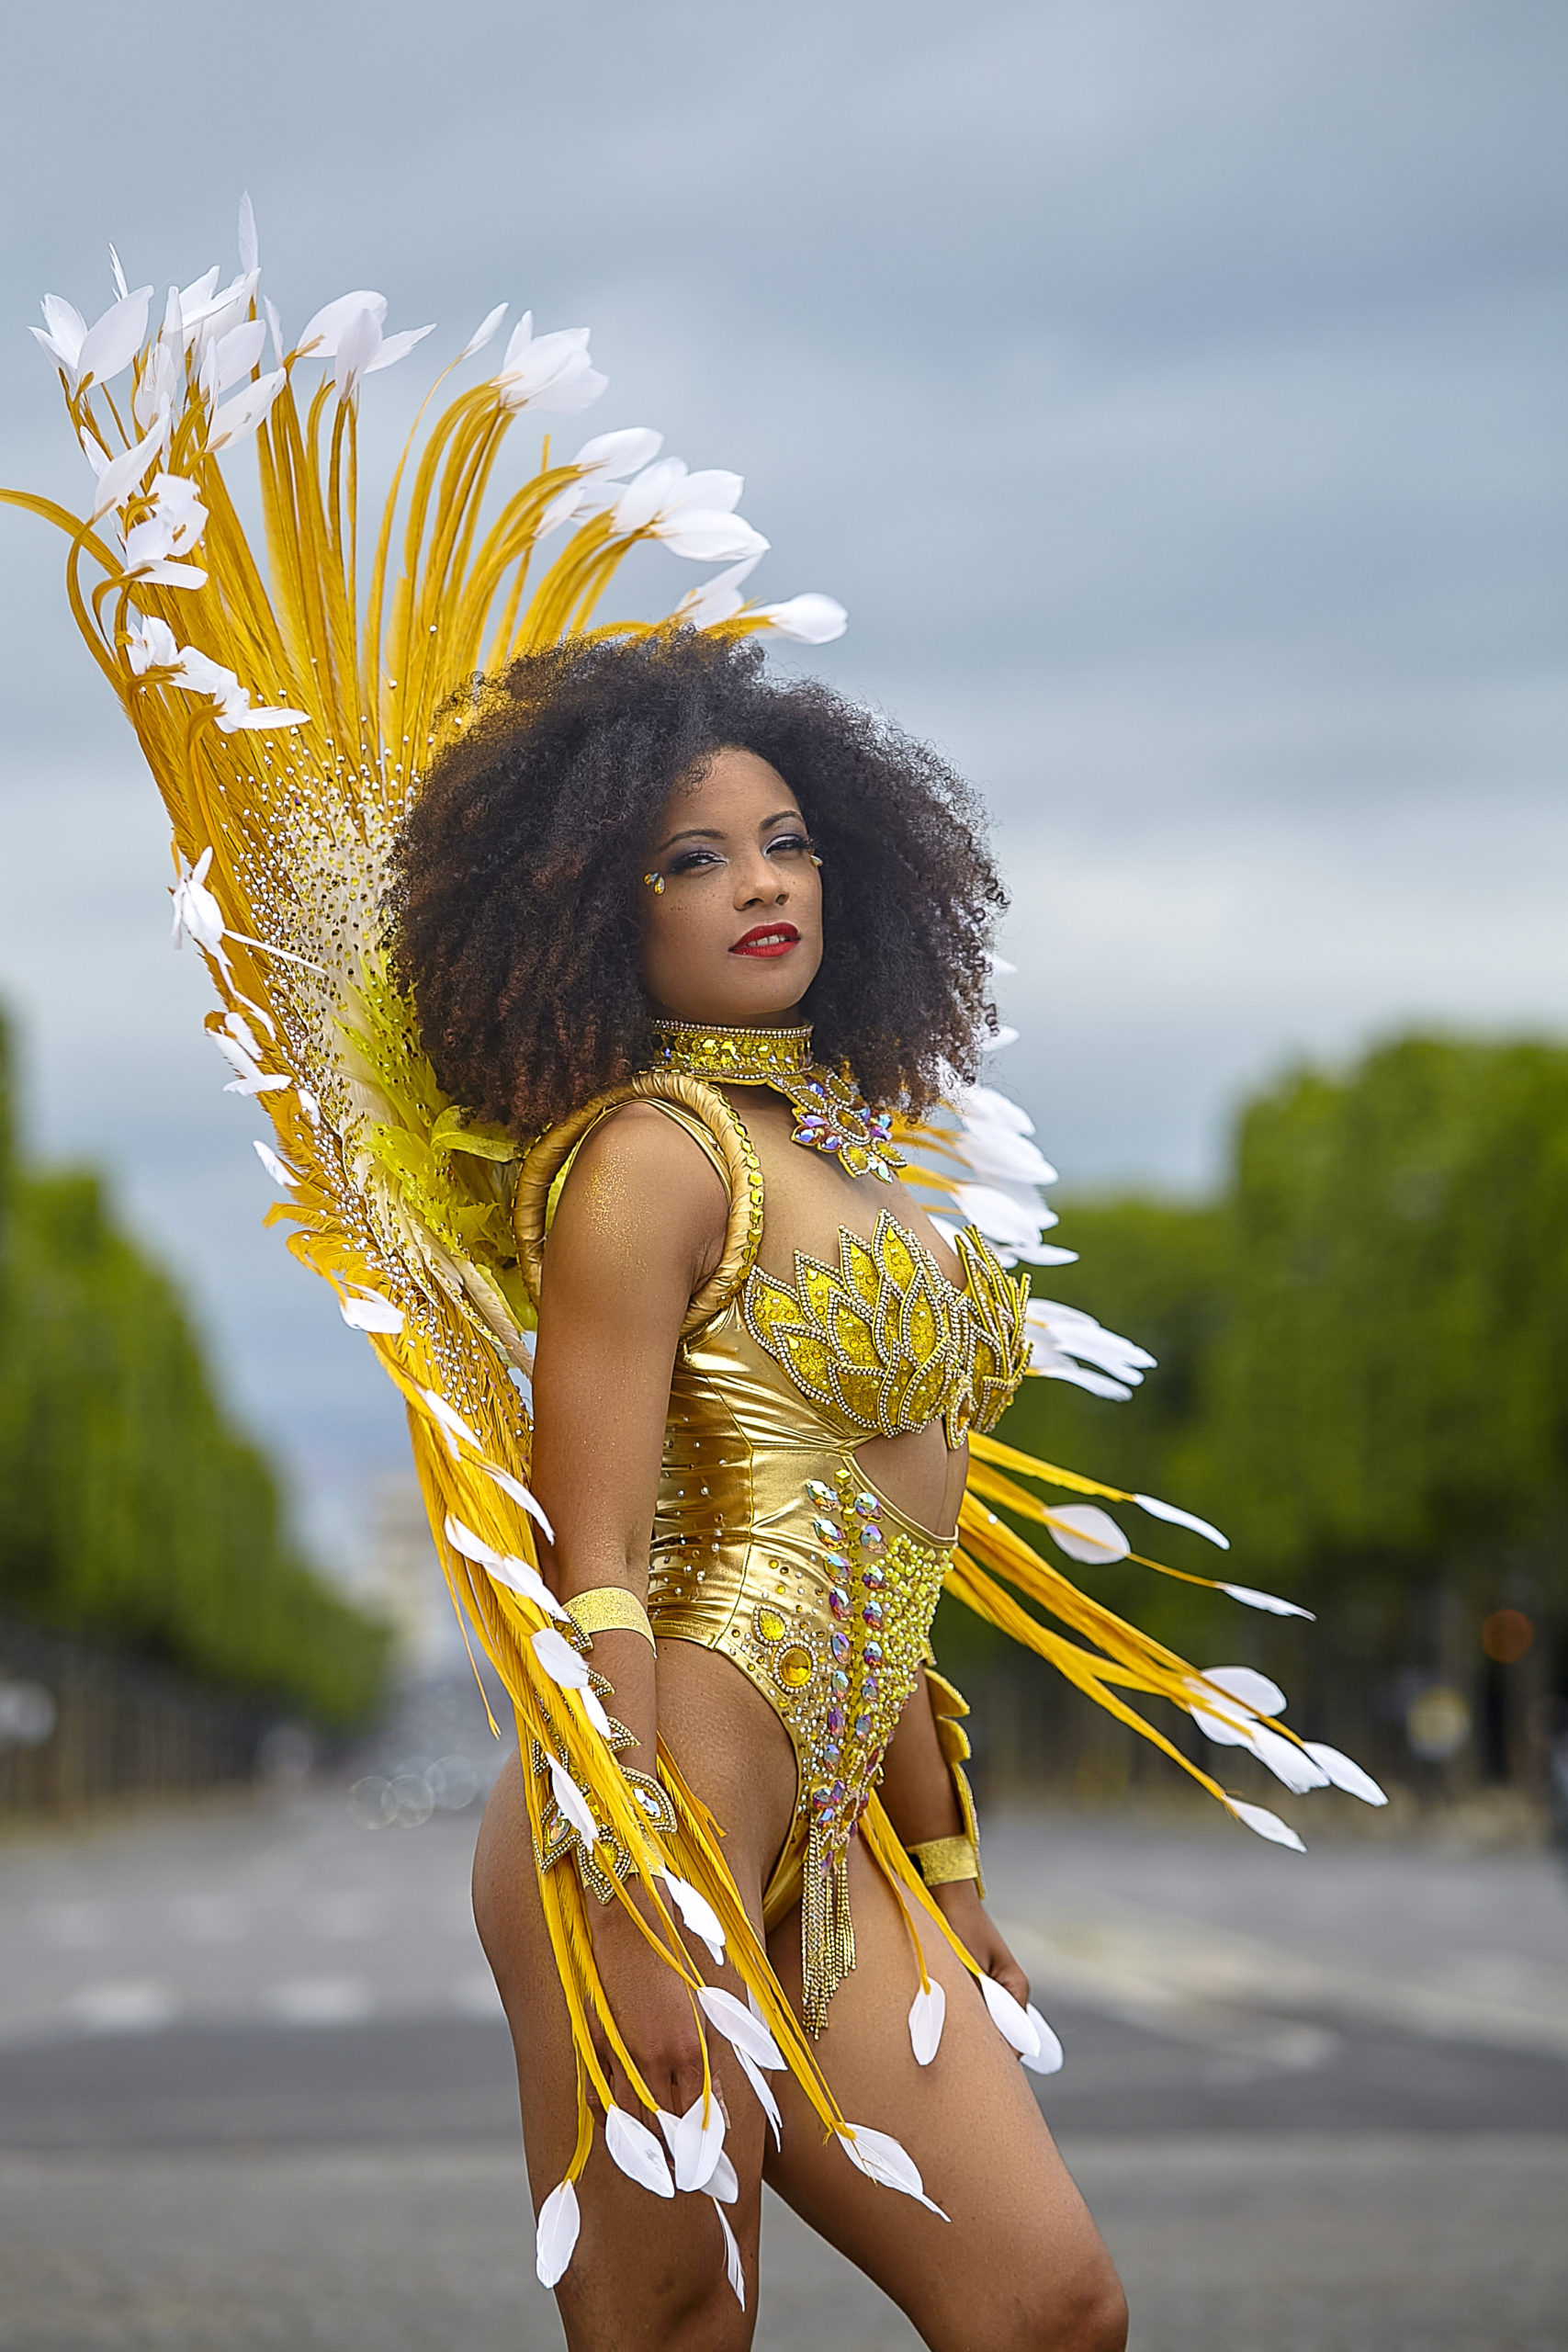 Où acheter un costume de Samba de danseuse brésilienne ?